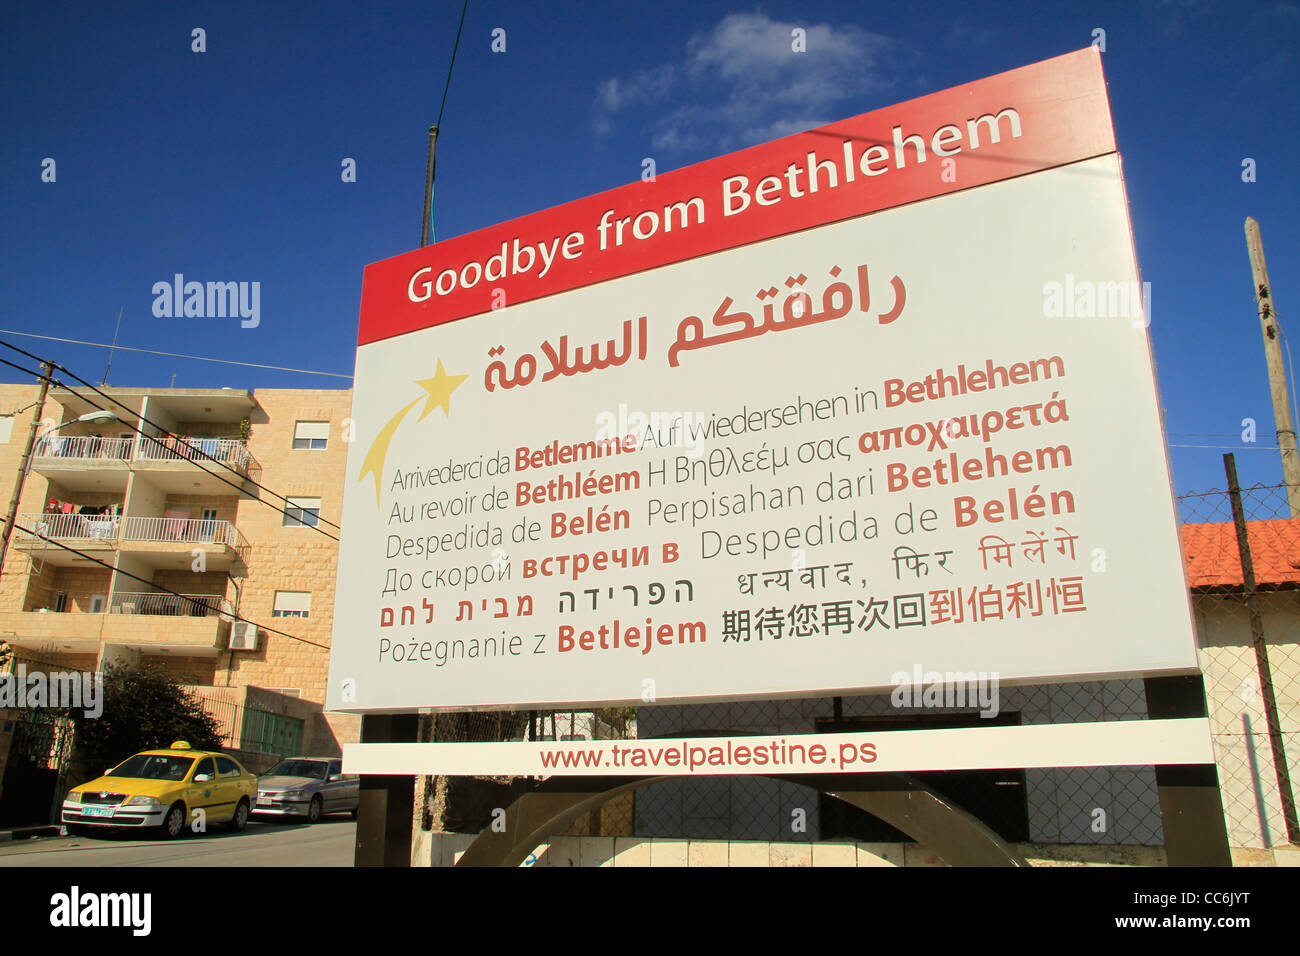 Bethlehem, a farewell sign Stock Photo